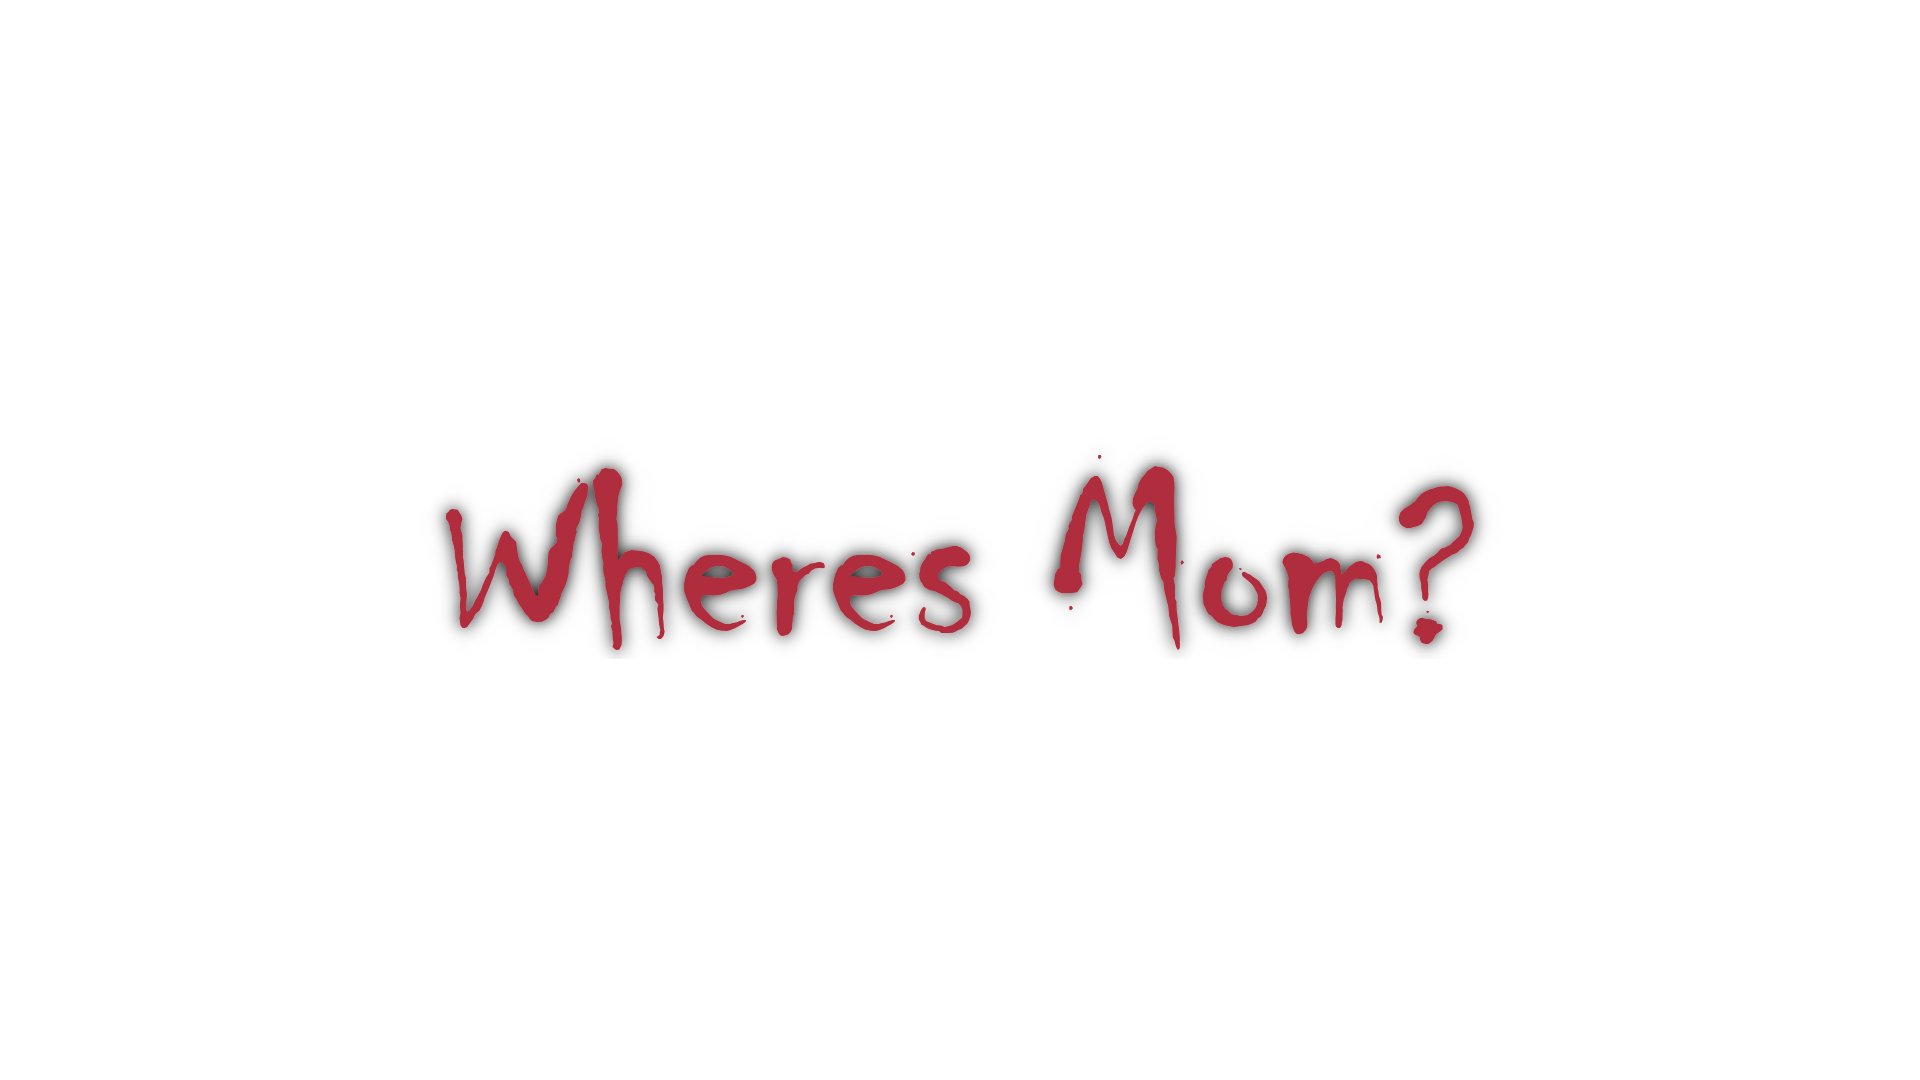 Where's Mom?